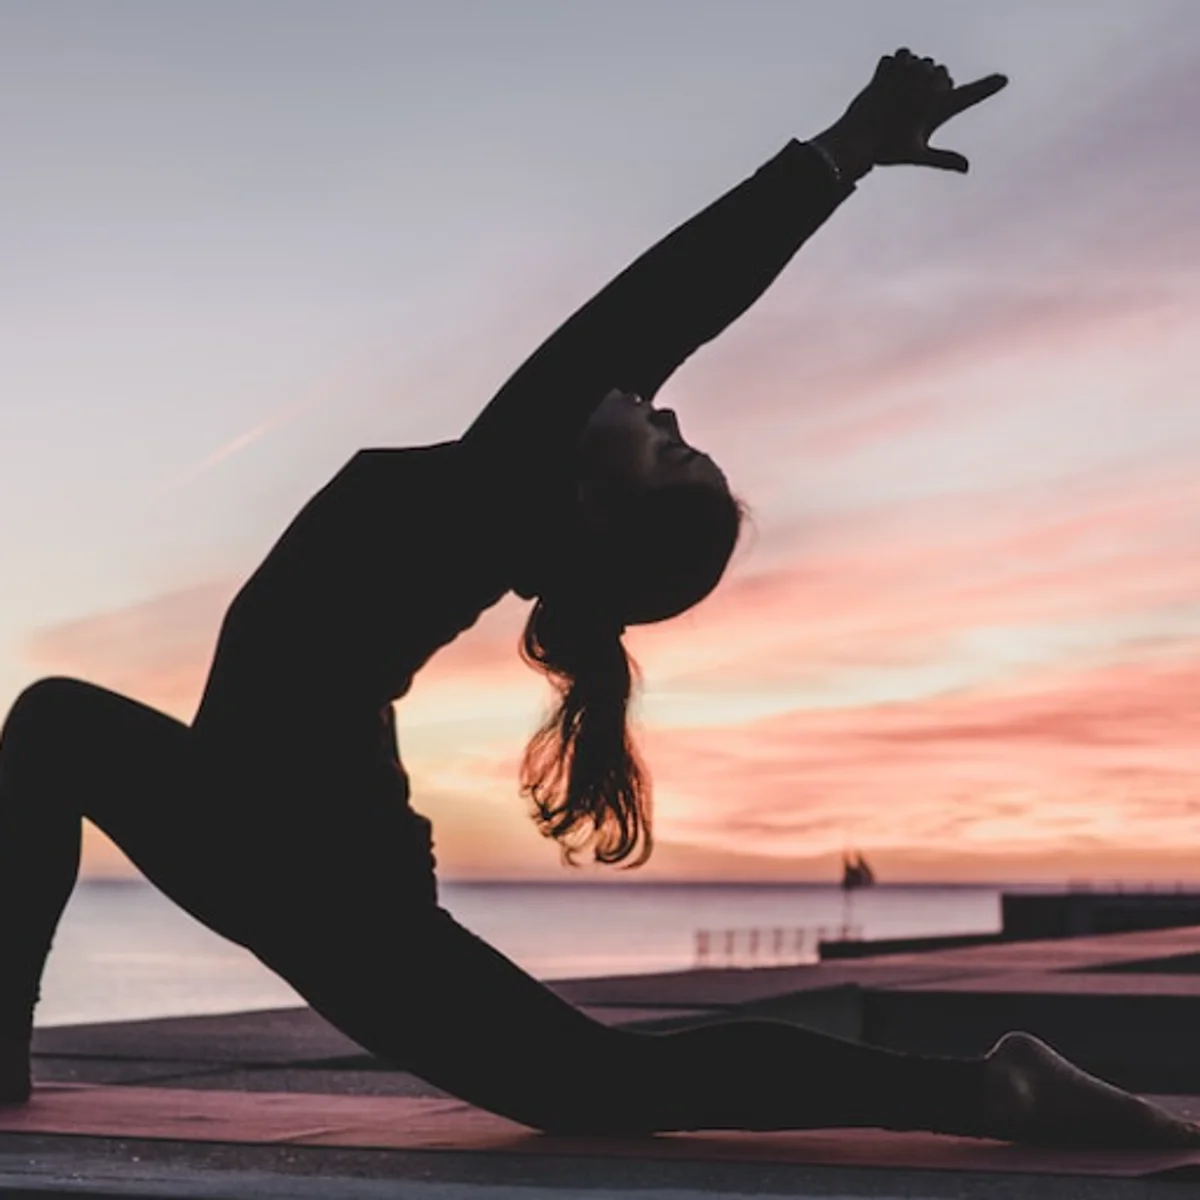 beneficios del yoga: Últimas noticias, videos y fotos de beneficios del yoga